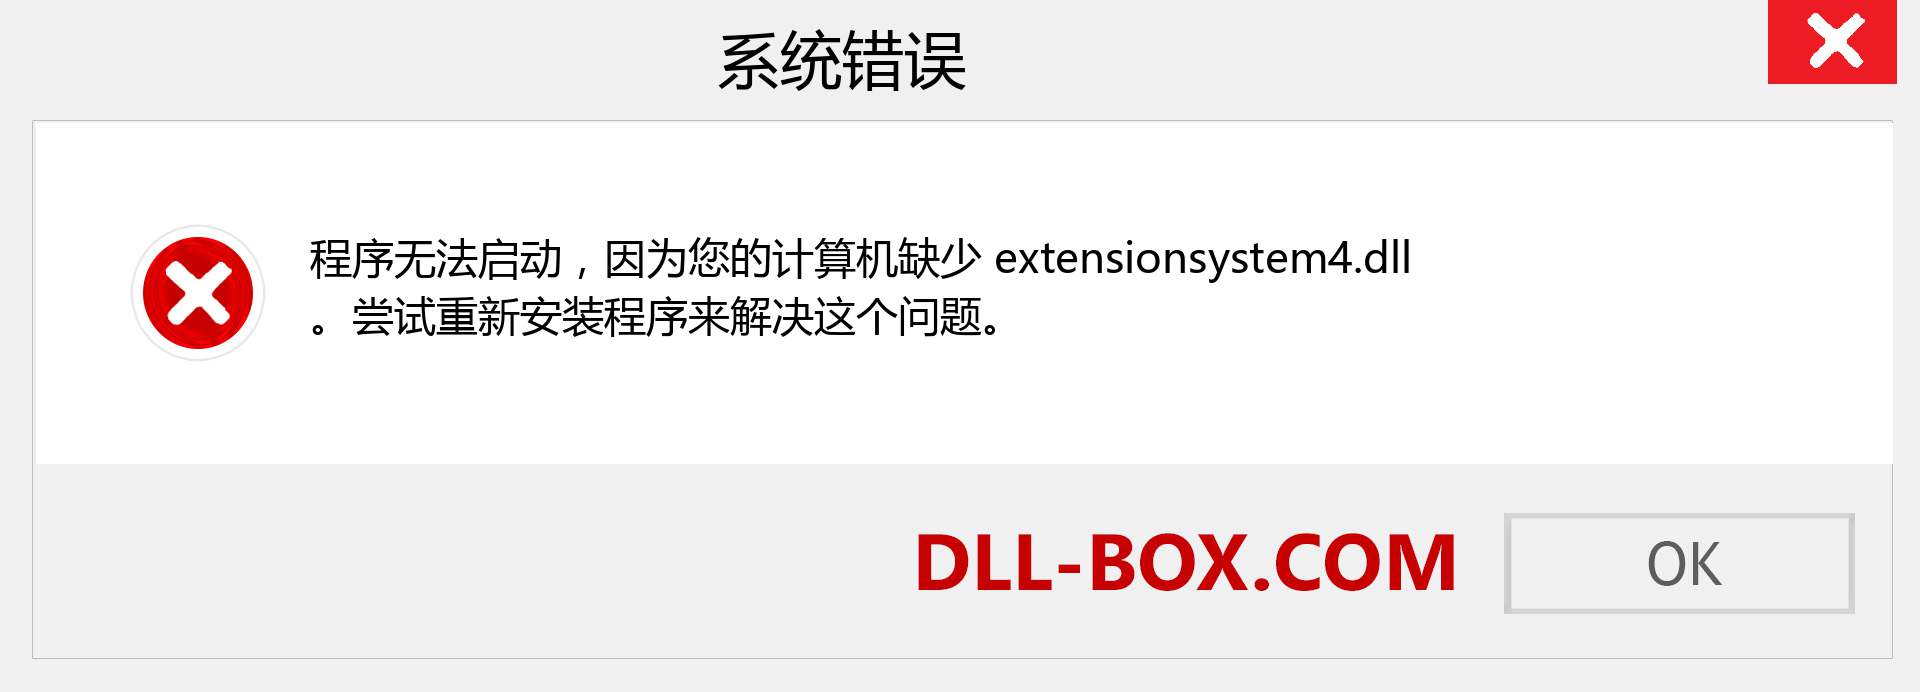 extensionsystem4.dll 文件丢失？。 适用于 Windows 7、8、10 的下载 - 修复 Windows、照片、图像上的 extensionsystem4 dll 丢失错误